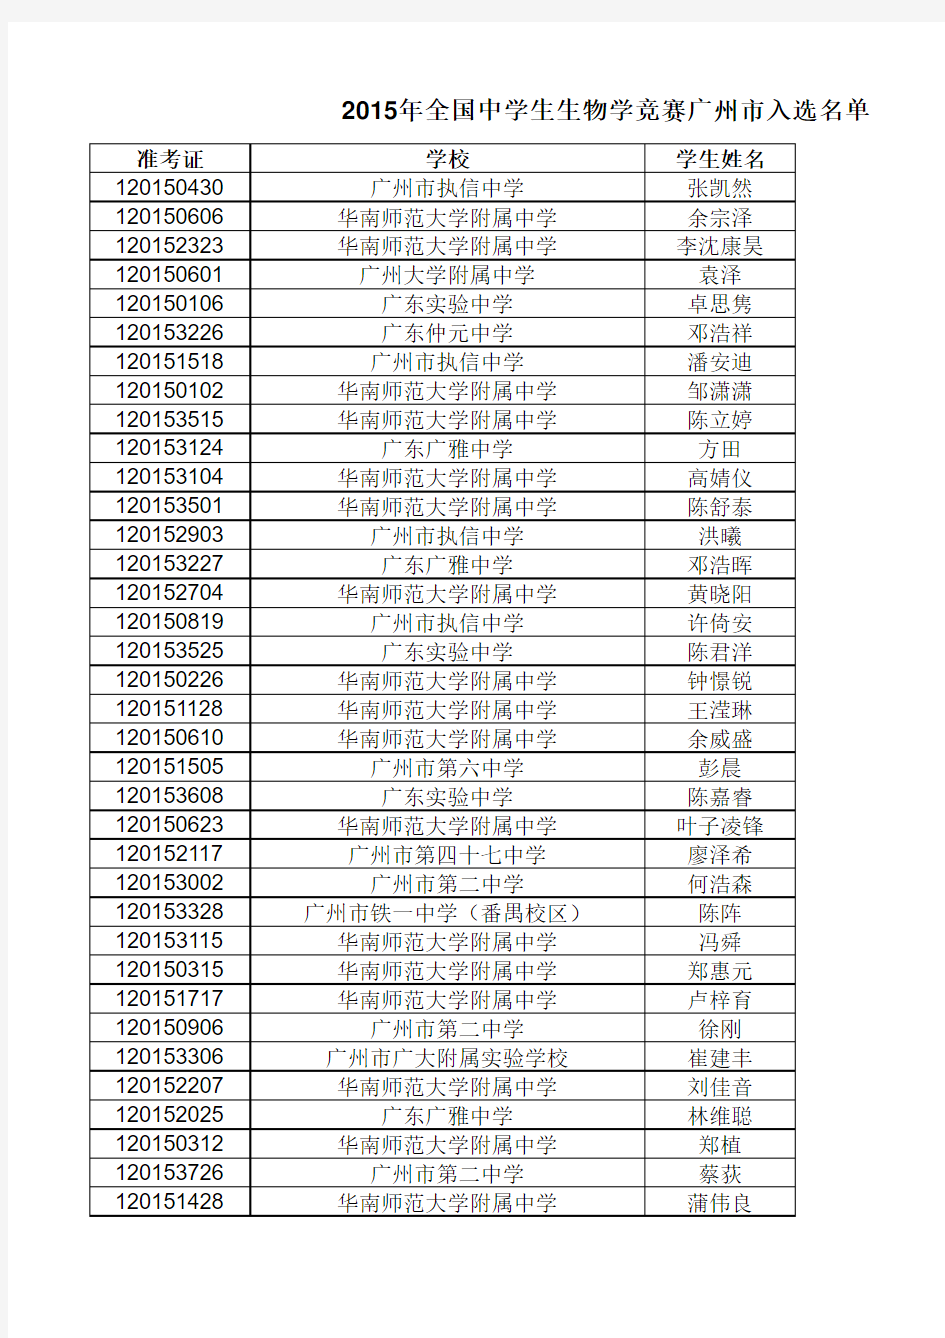 2015年广东省中学生生物学竞赛成绩表(公布)